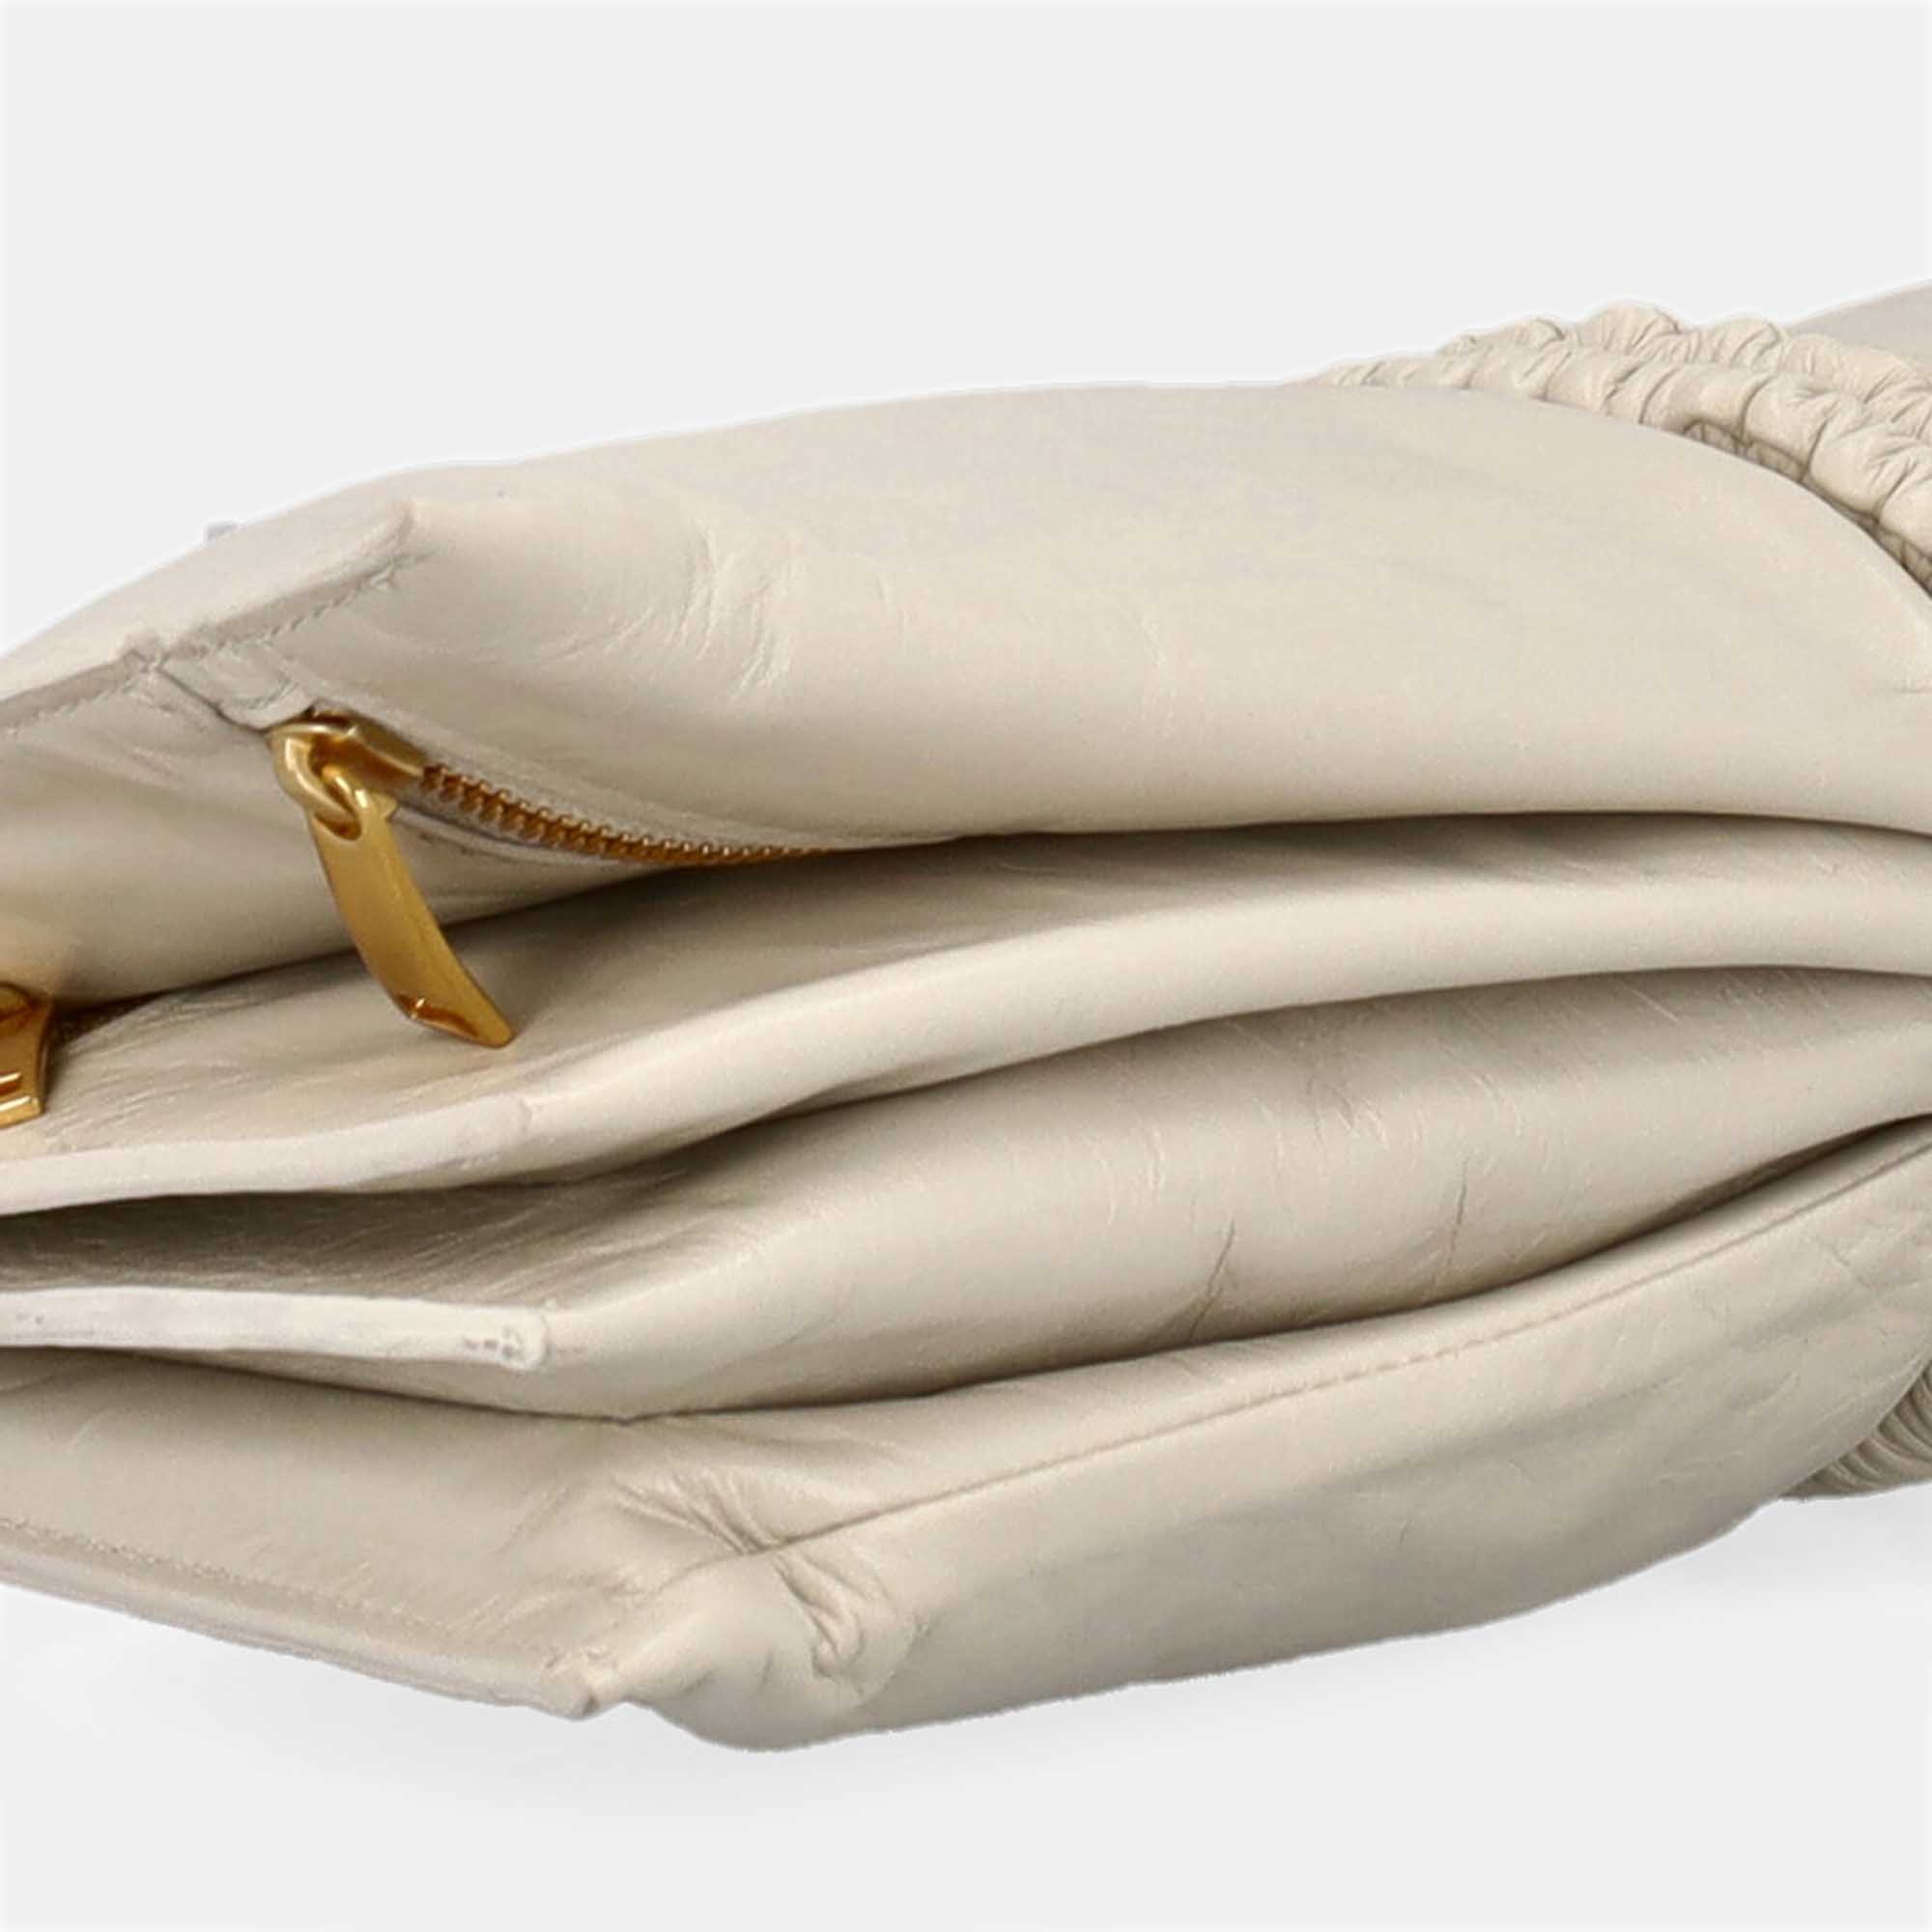 Bottega Veneta Women's Leather Clutch Bag - Grey - One Size